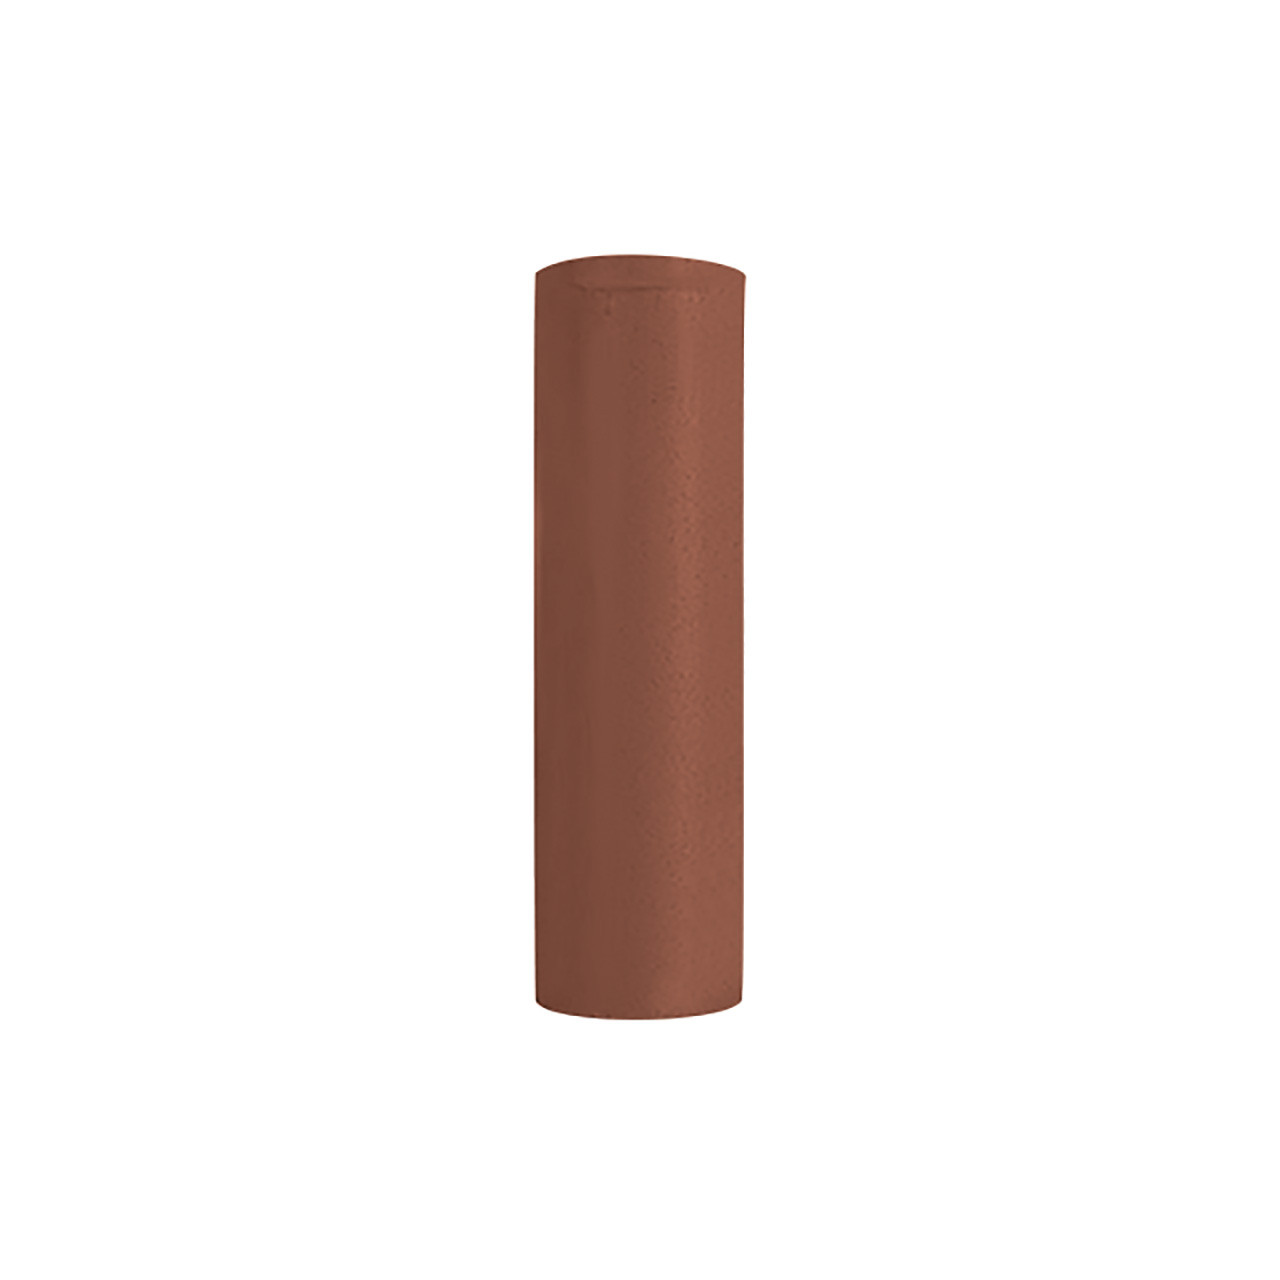 Edenta TopStar Polishers - Brown Cylinder (Pkg. of 10)